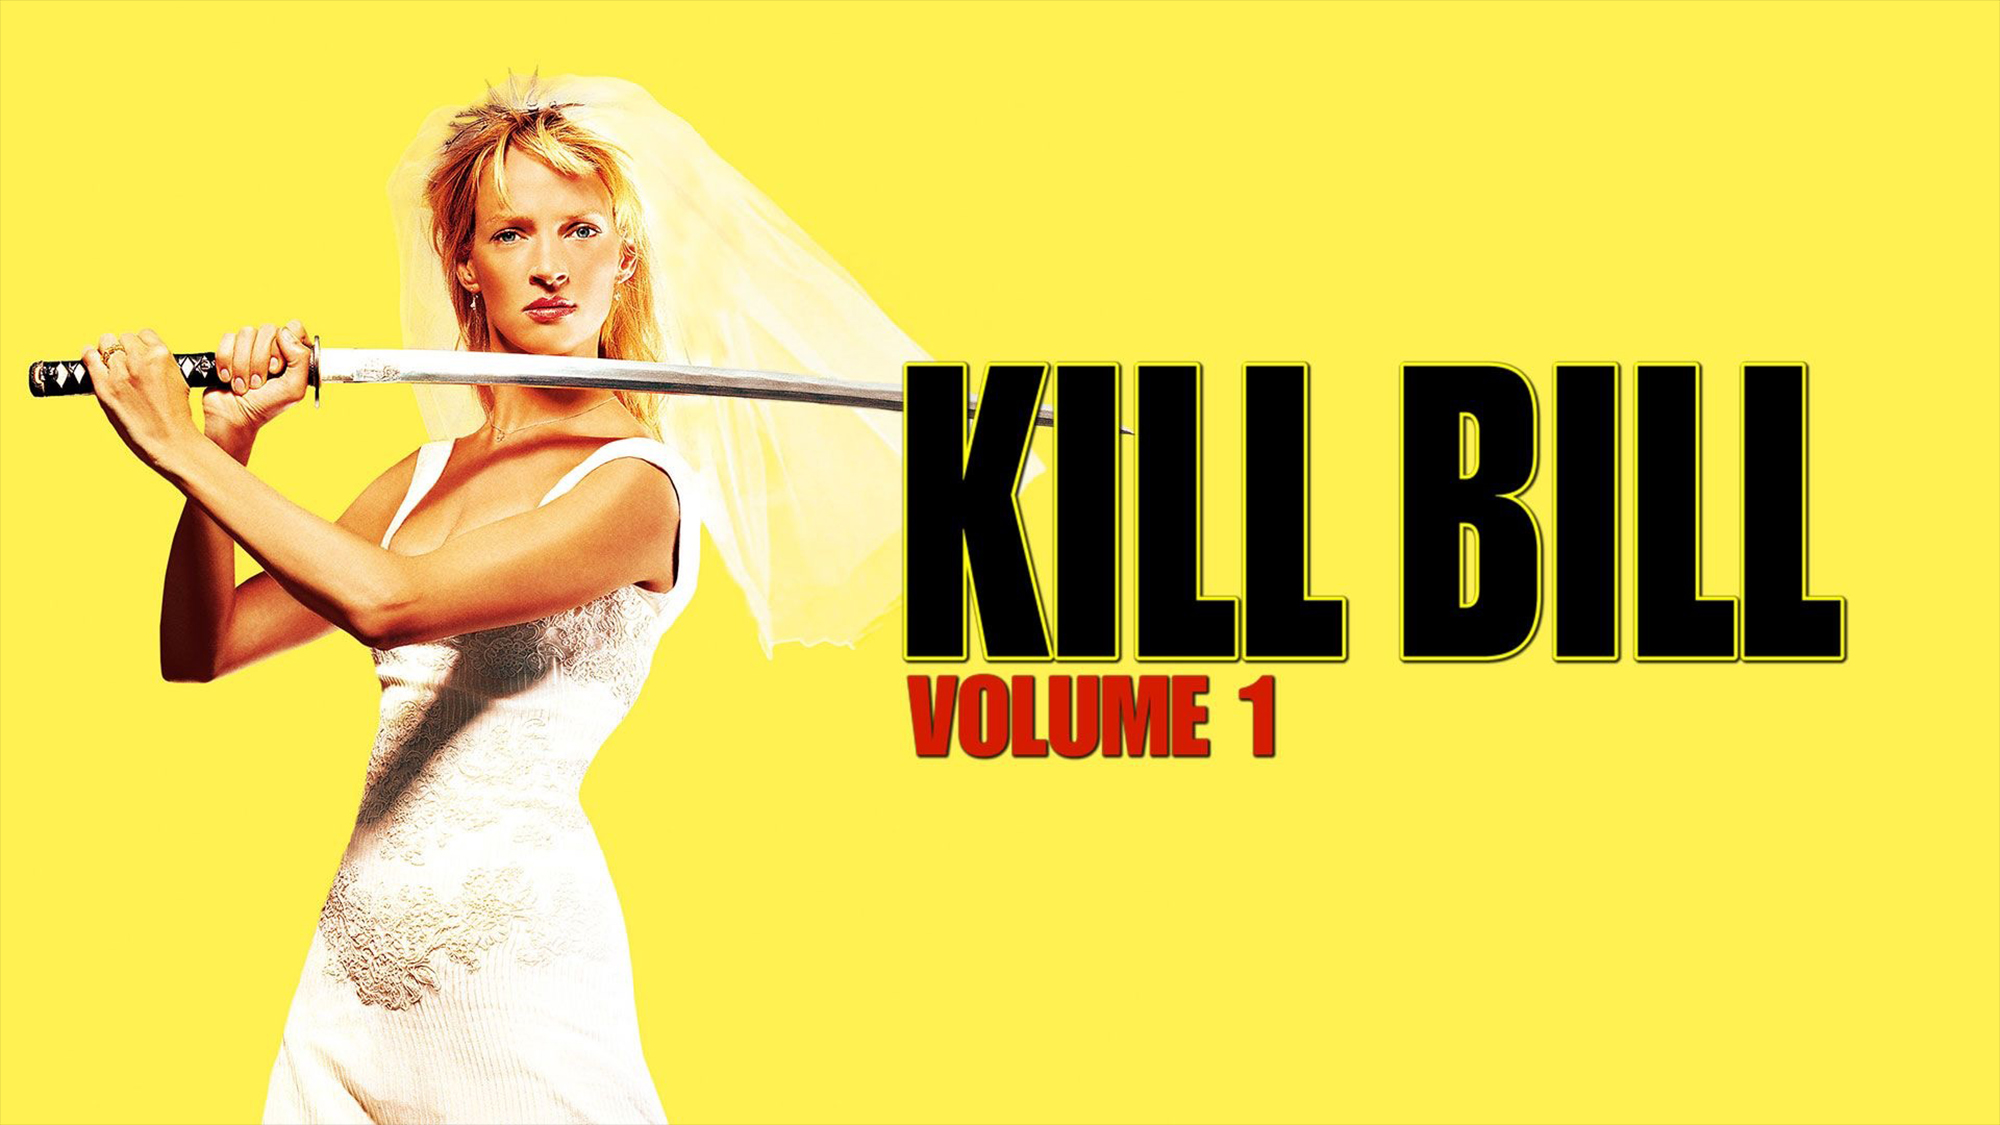 kill bill, uma thurman, movie, kill bill: vol 1